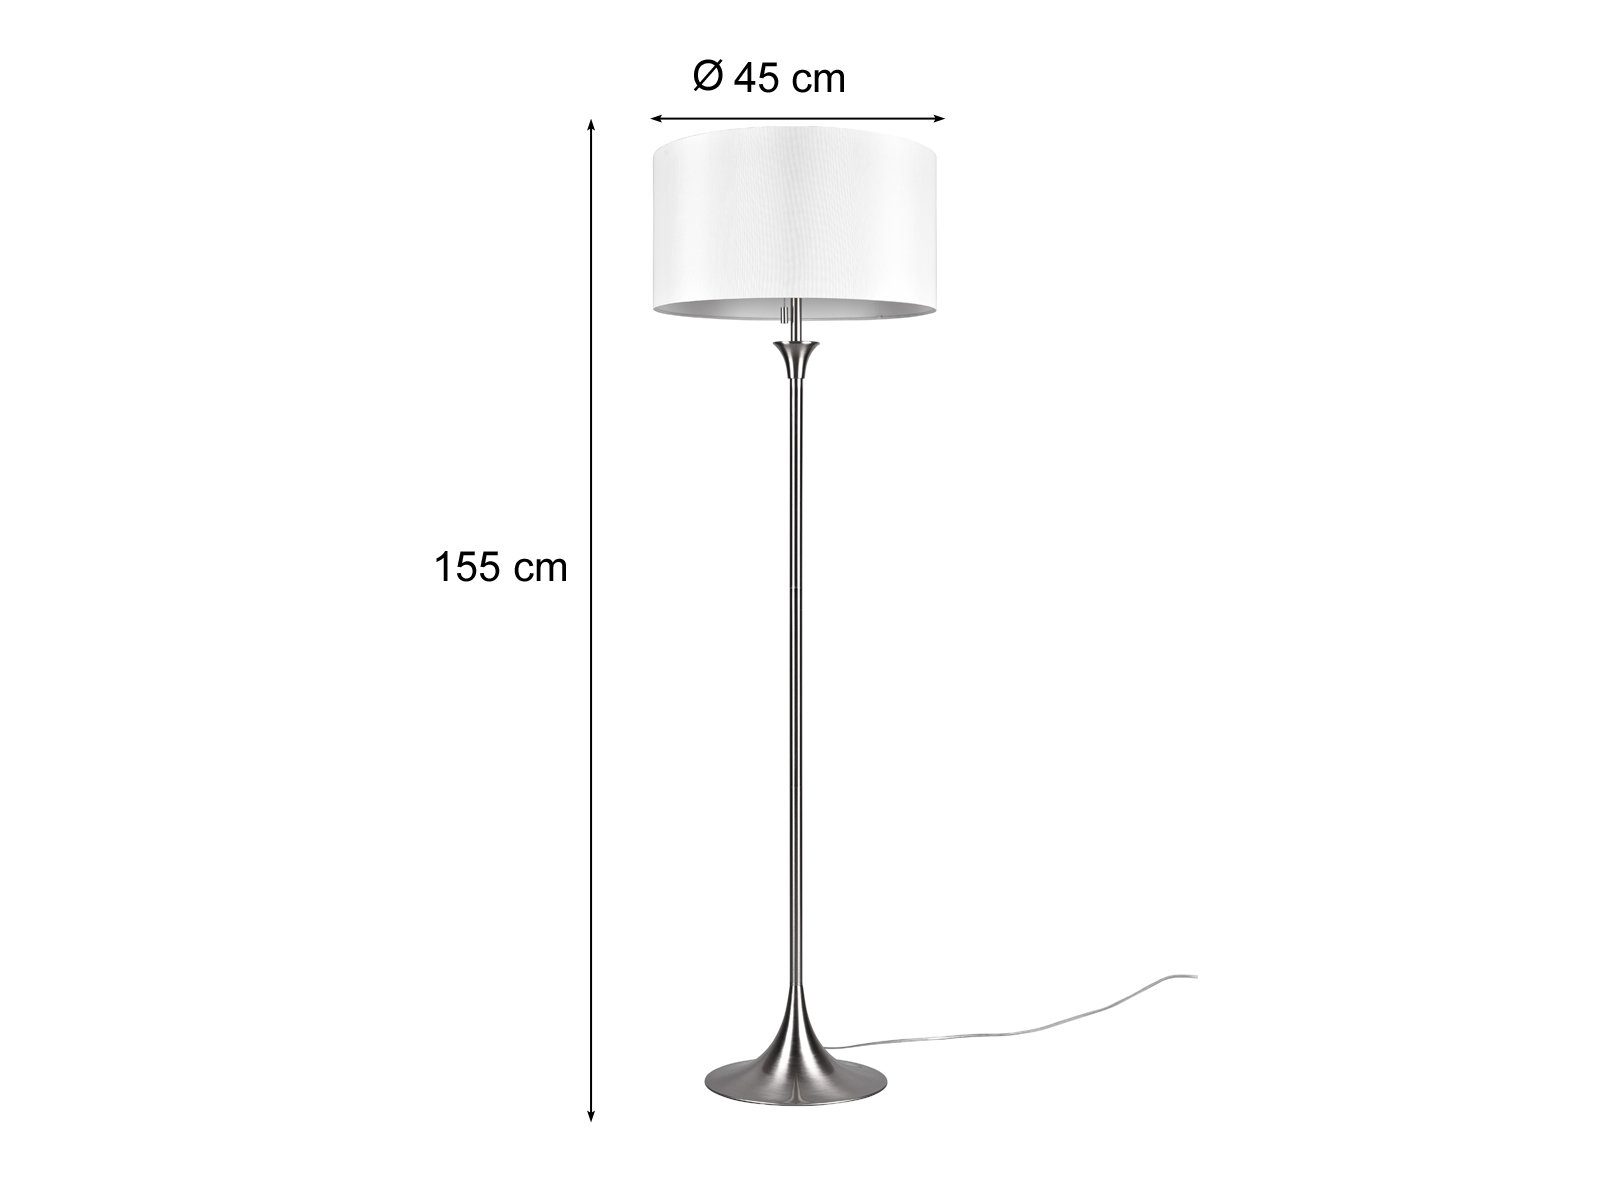 Stehlampe, Design-klassiker meineWunschleuchte Stoff 155cm / getrennt matt Warmweiß, für LED Ecke, Weiß Weiß Lampen-schirm schaltbar, LED Lichtquellen wechselbar, Höhe mit Silber